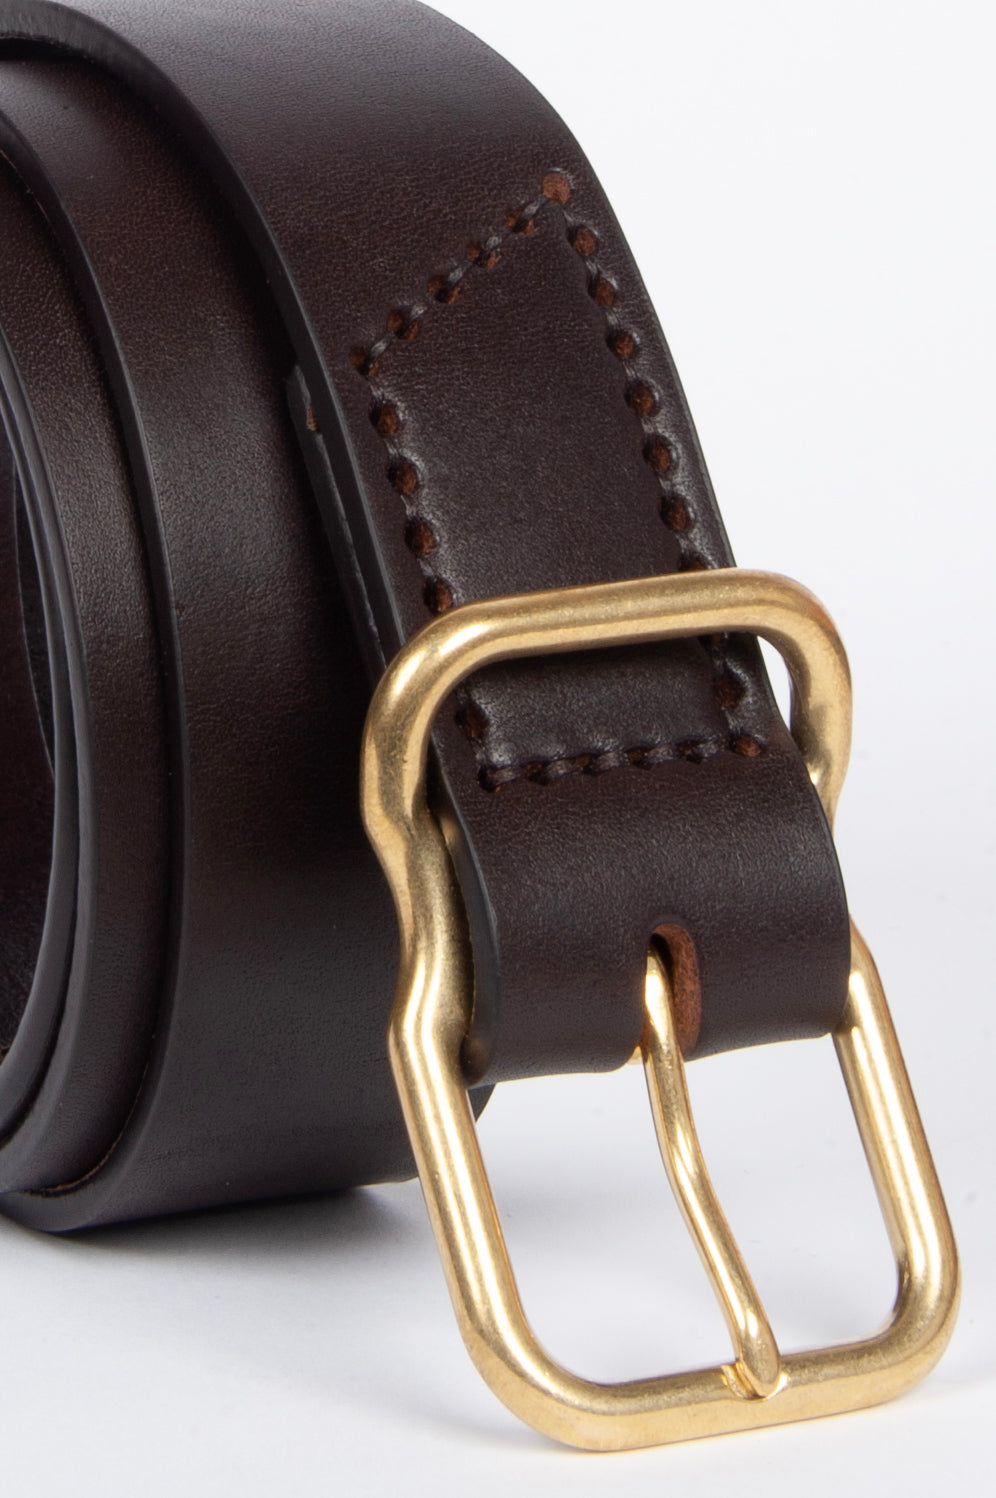 112 Signature Leather Belt - Dark Brown - Brass